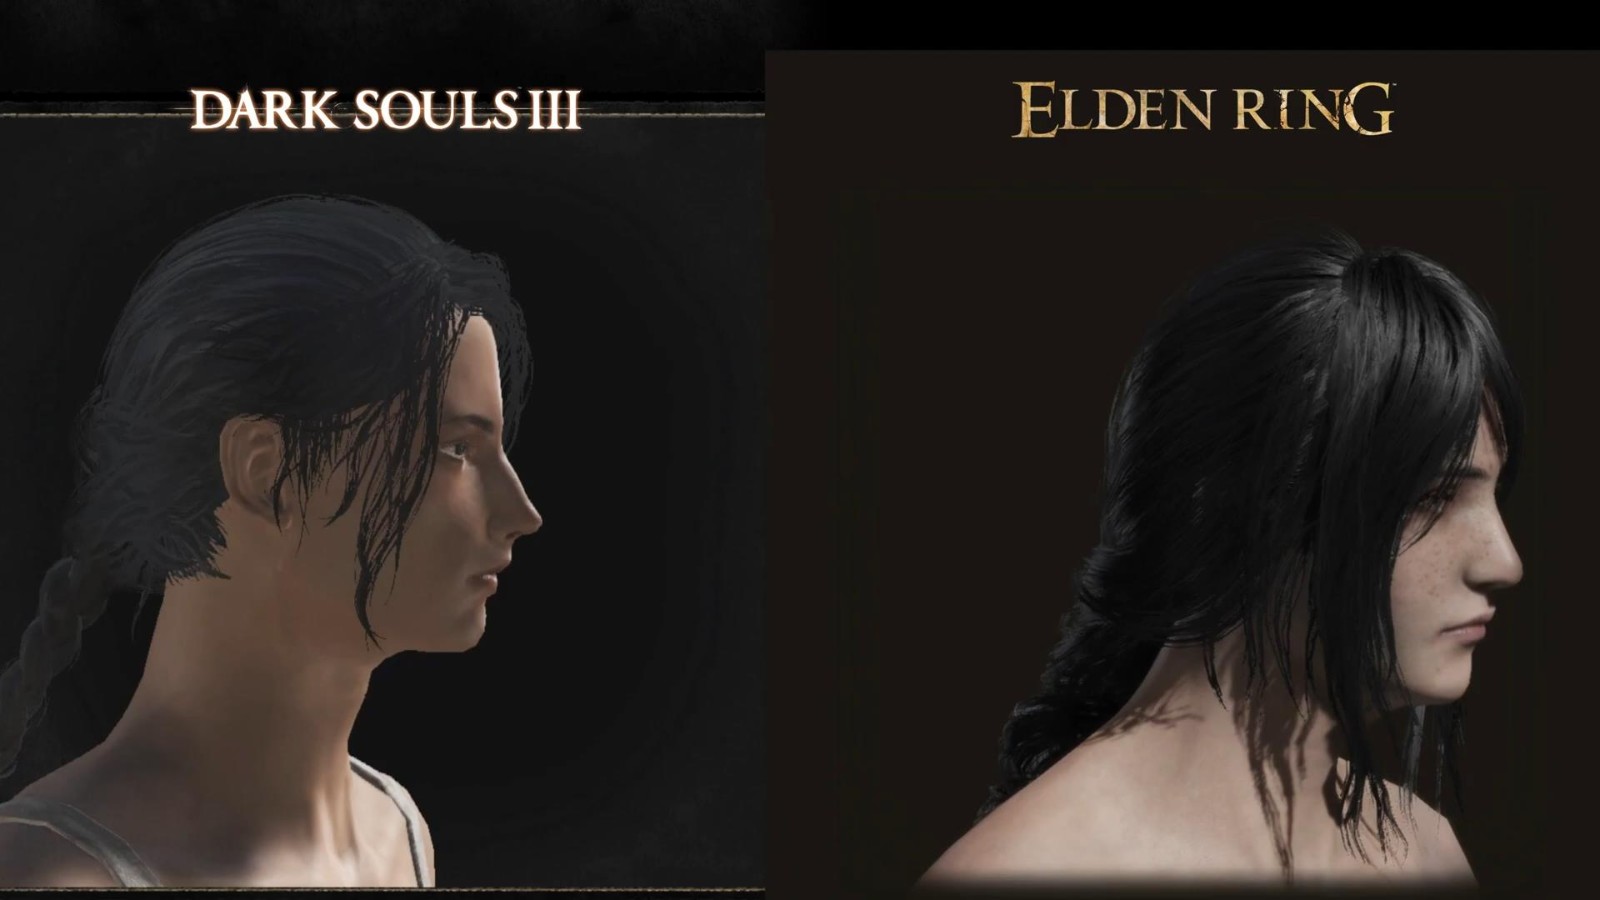 《艾爾登法環》與《黑魂3》角色定制對比 逼真吸睛